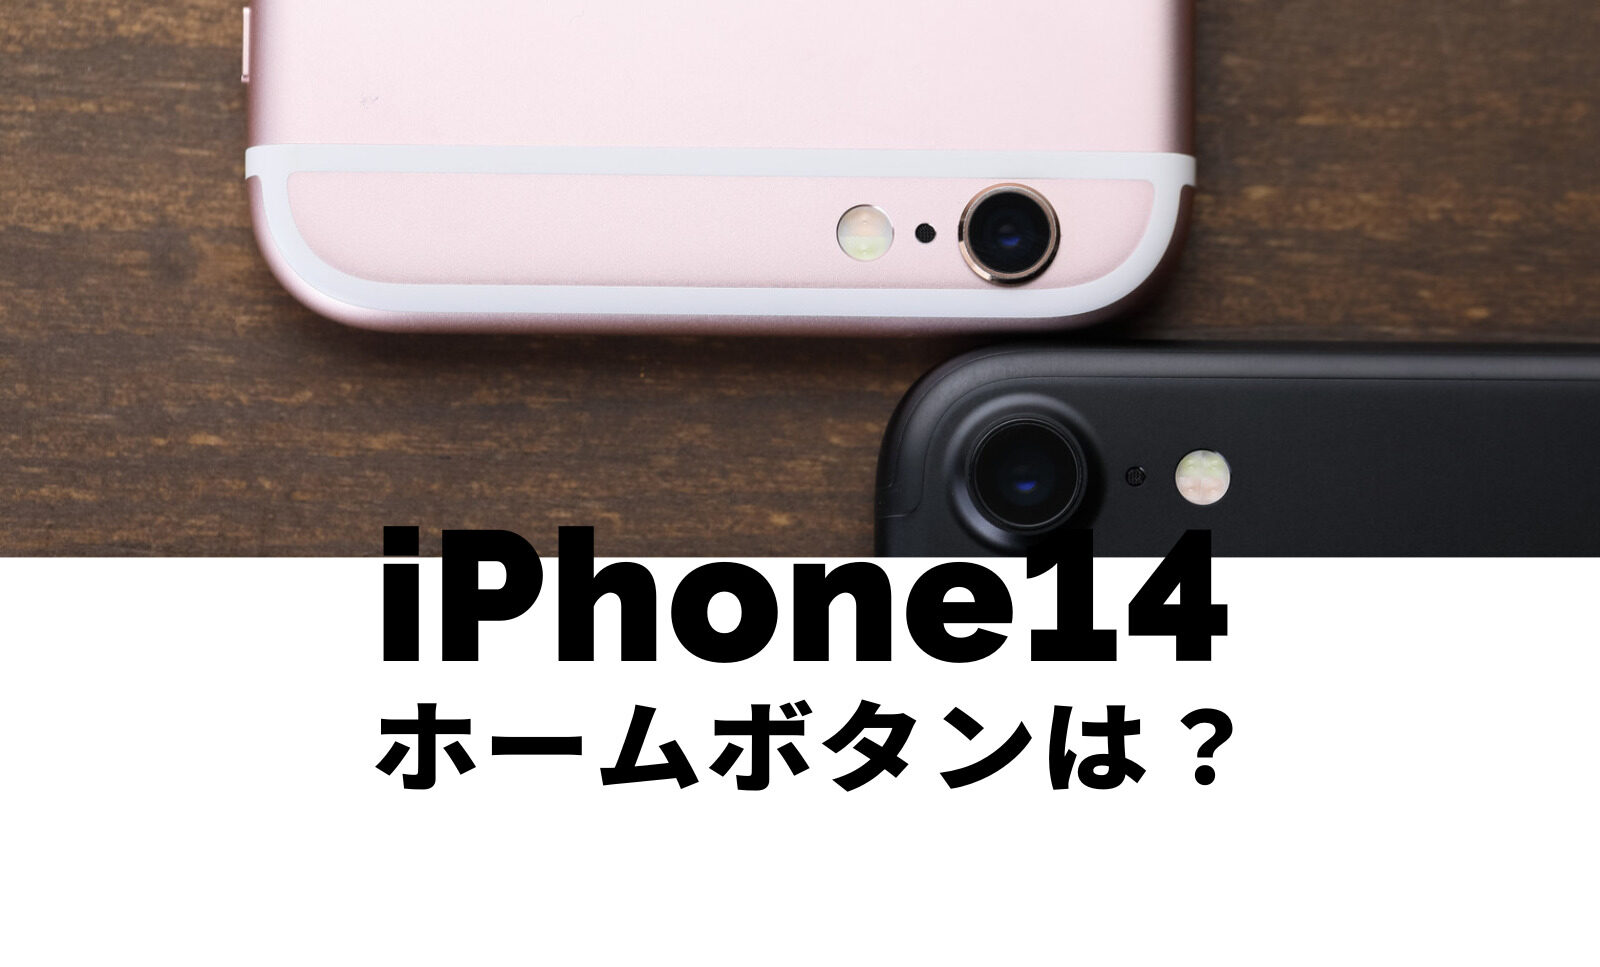 iPhone14でホームボタンは搭載される&復活する可能性はある？のサムネイル画像